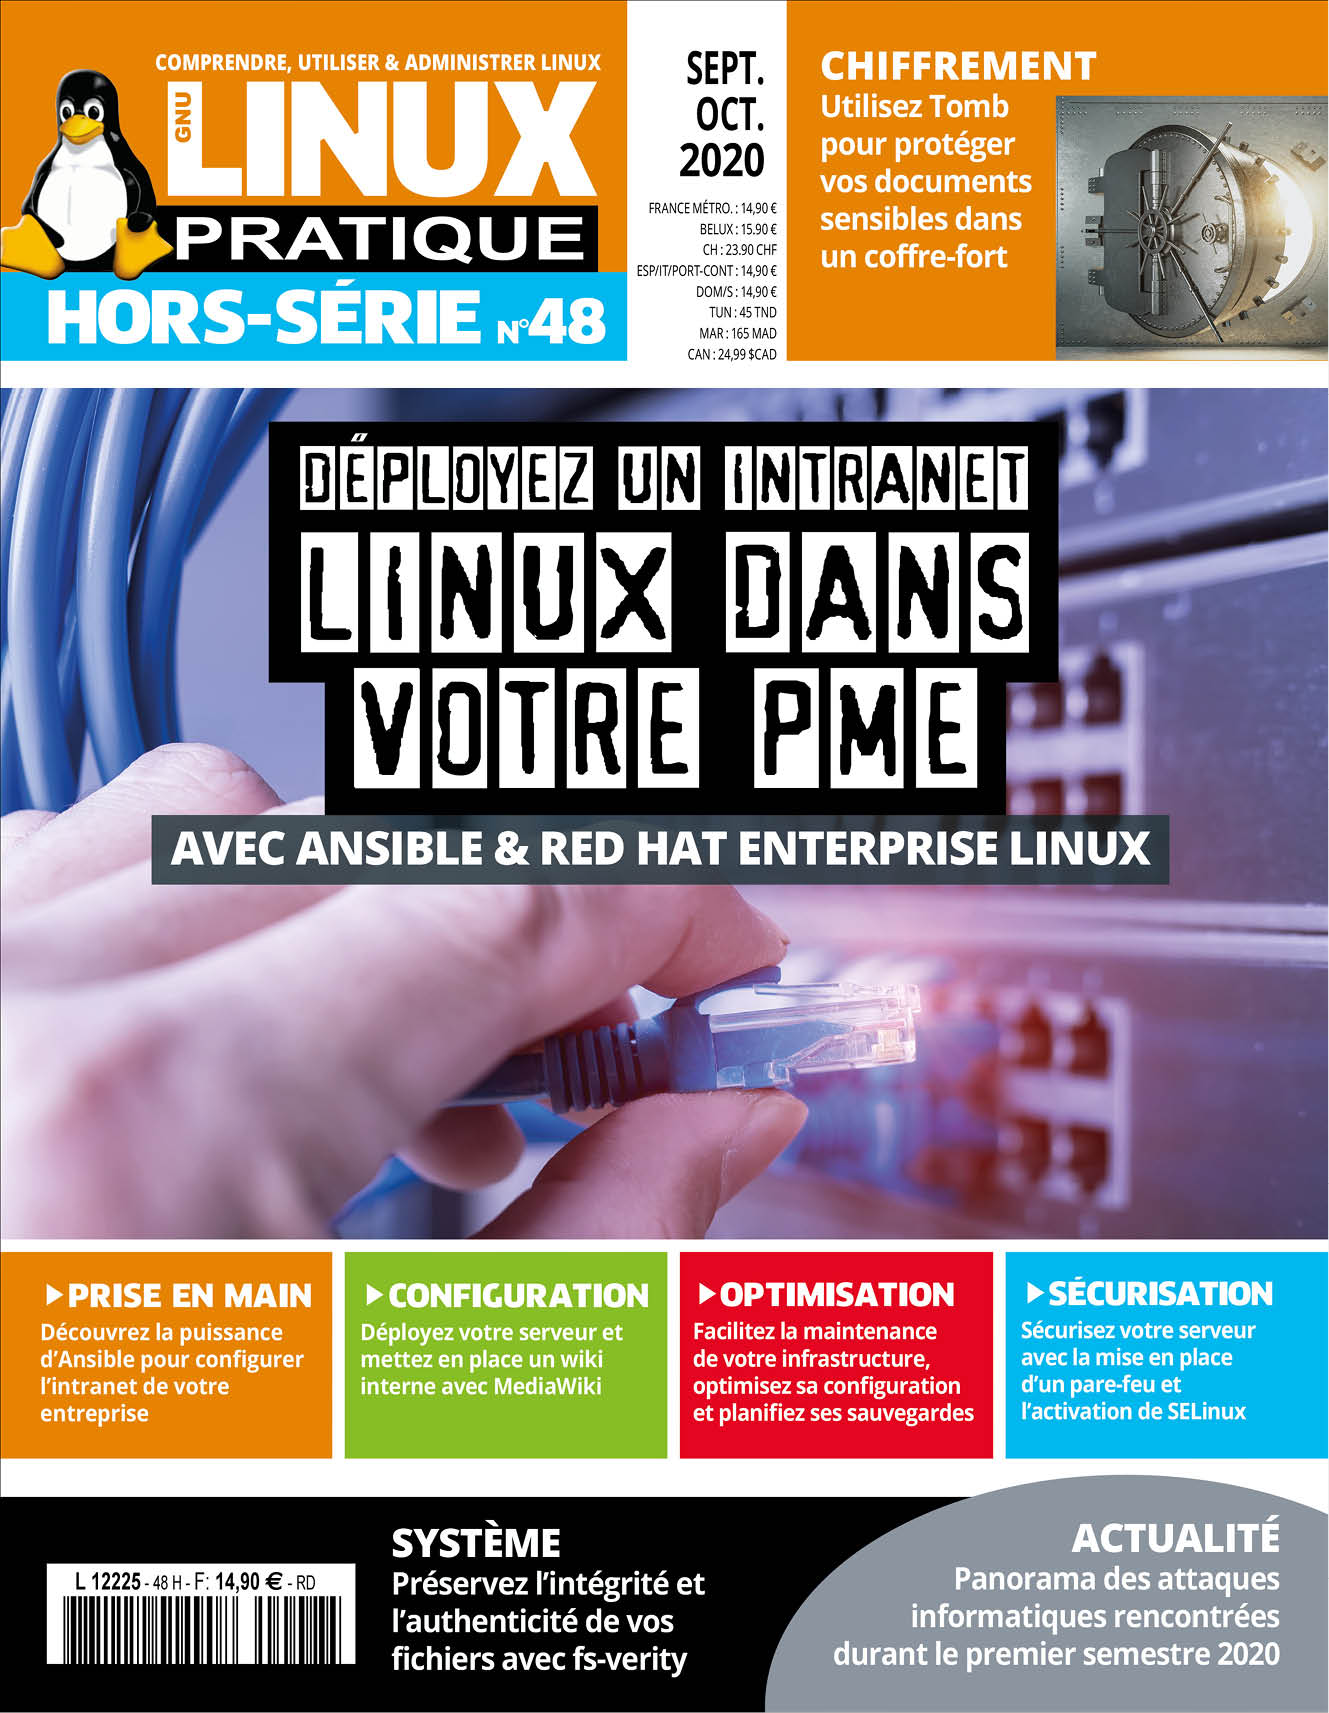 Déployez un intranet Linux dans votre PME avec Ansible & Red Hat Enterprise Linux